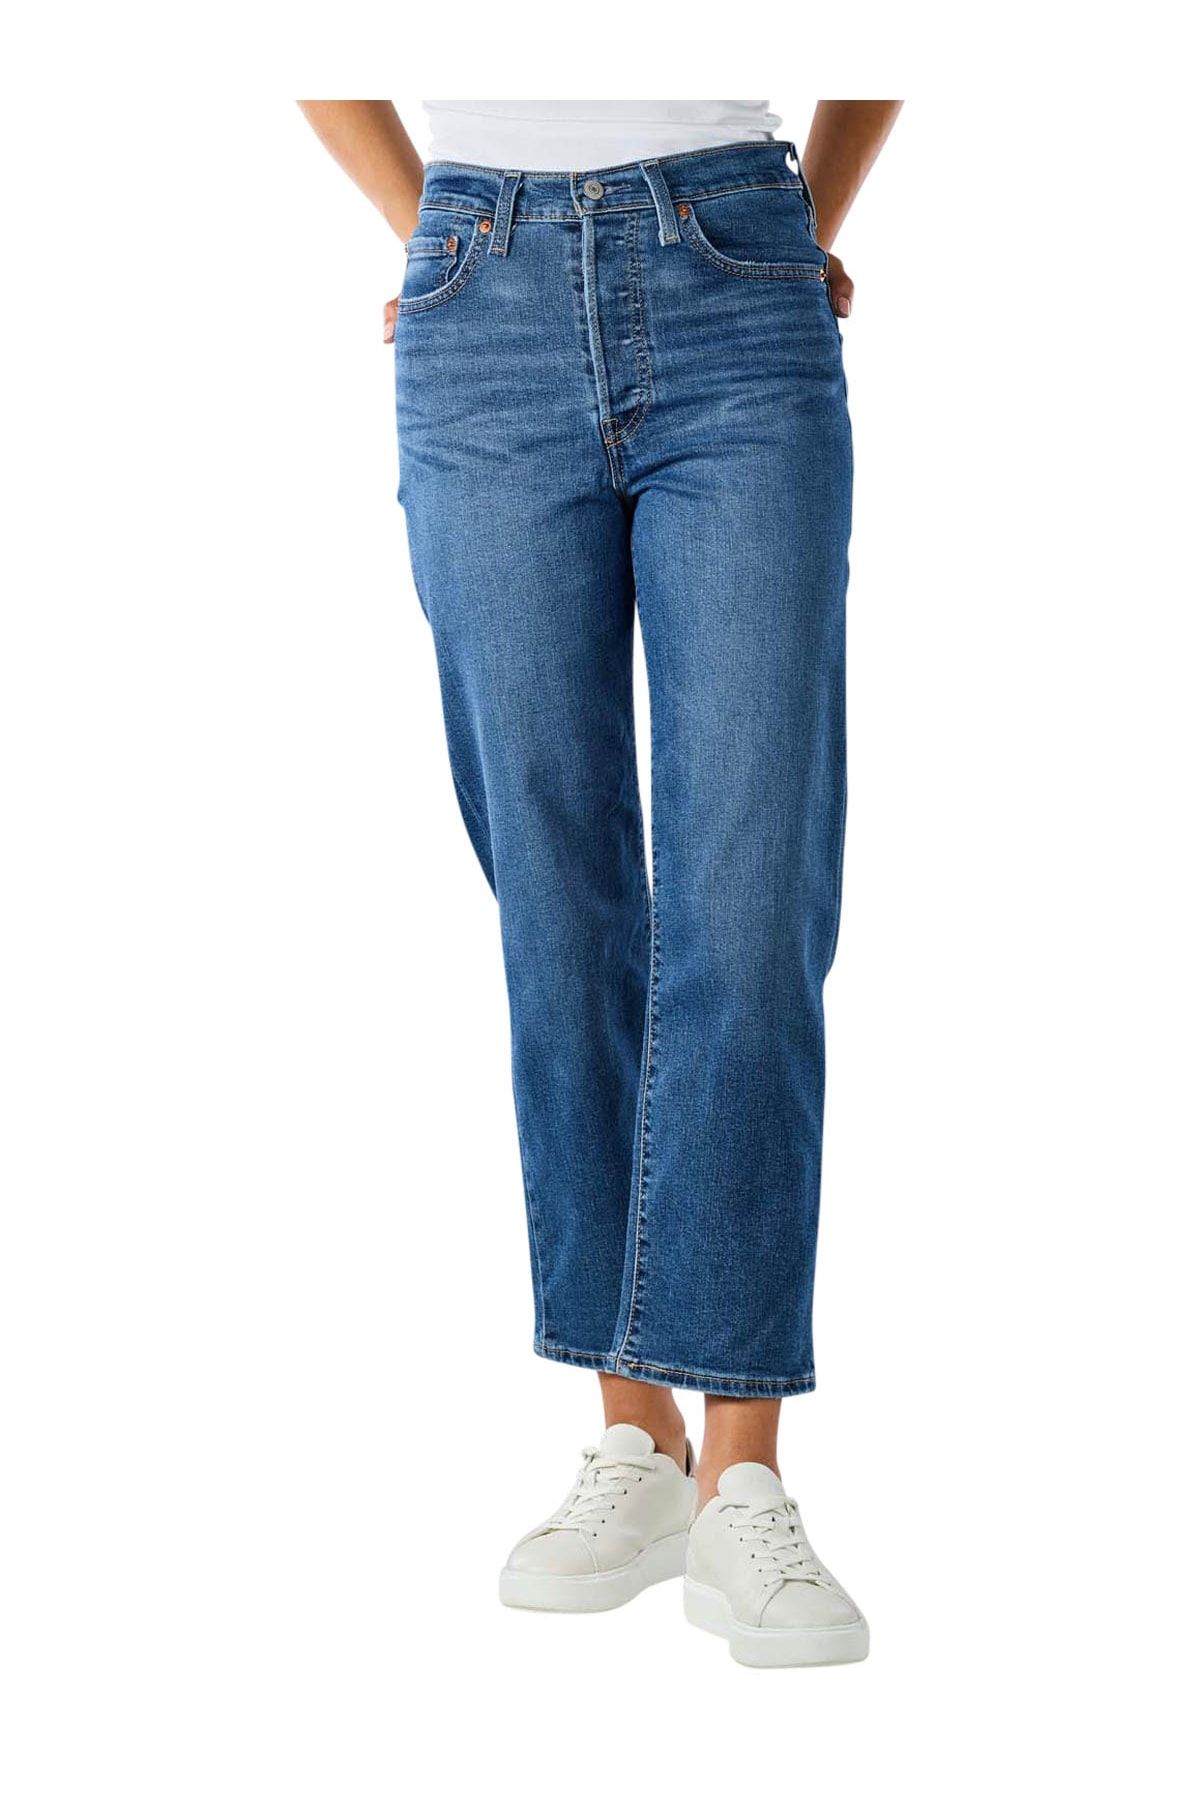 Levi's Kadın Yüksek Bel Jeans Düz Kesim Kot Pantolon - 72693-0121